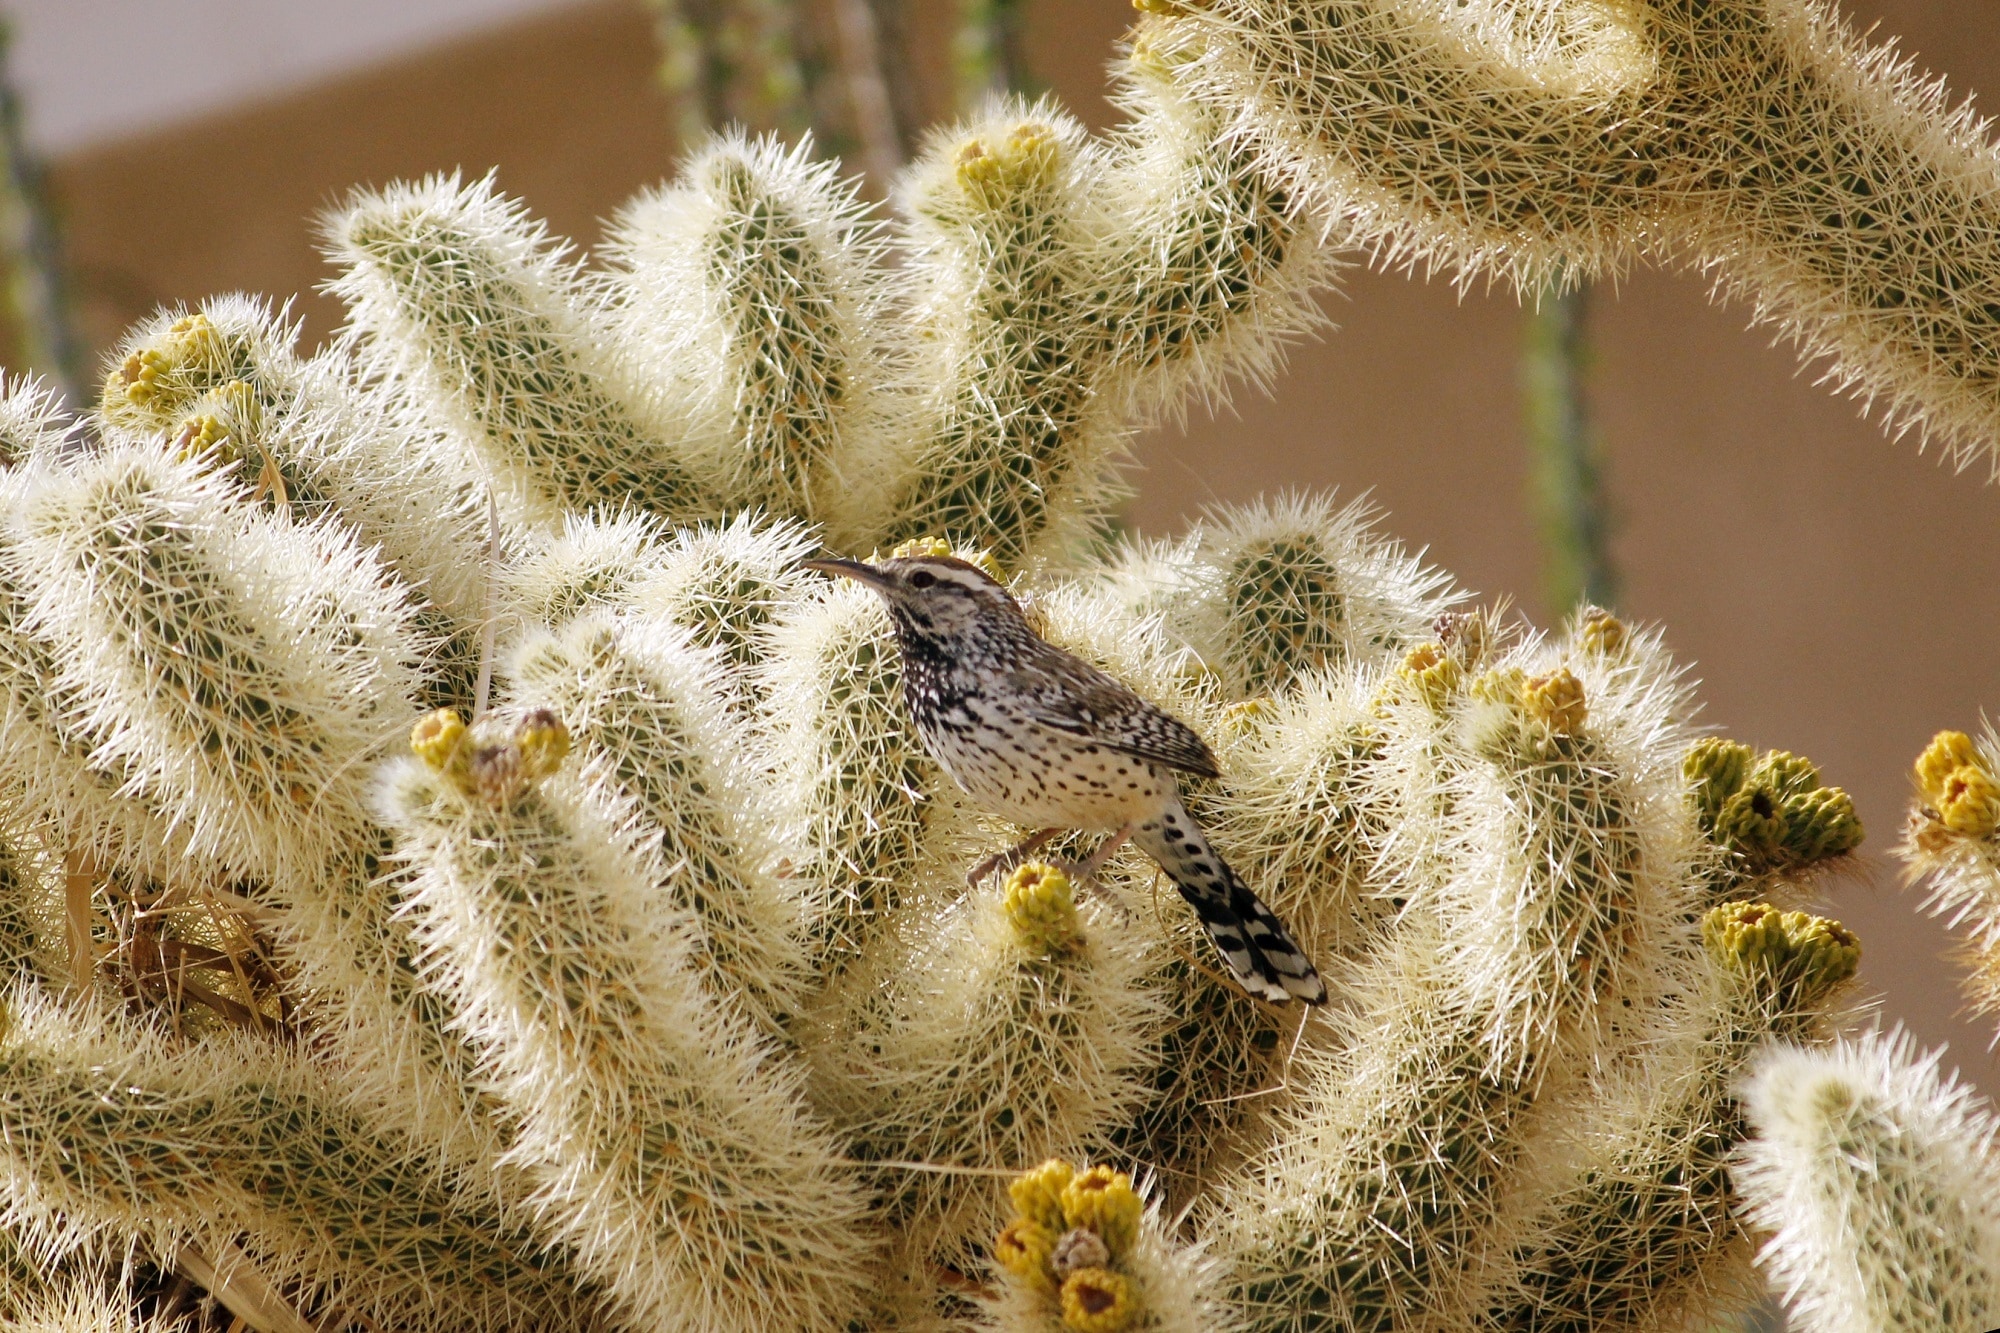 Cactus Wren, Bird, Nature, Wildlife, cactus, thorn